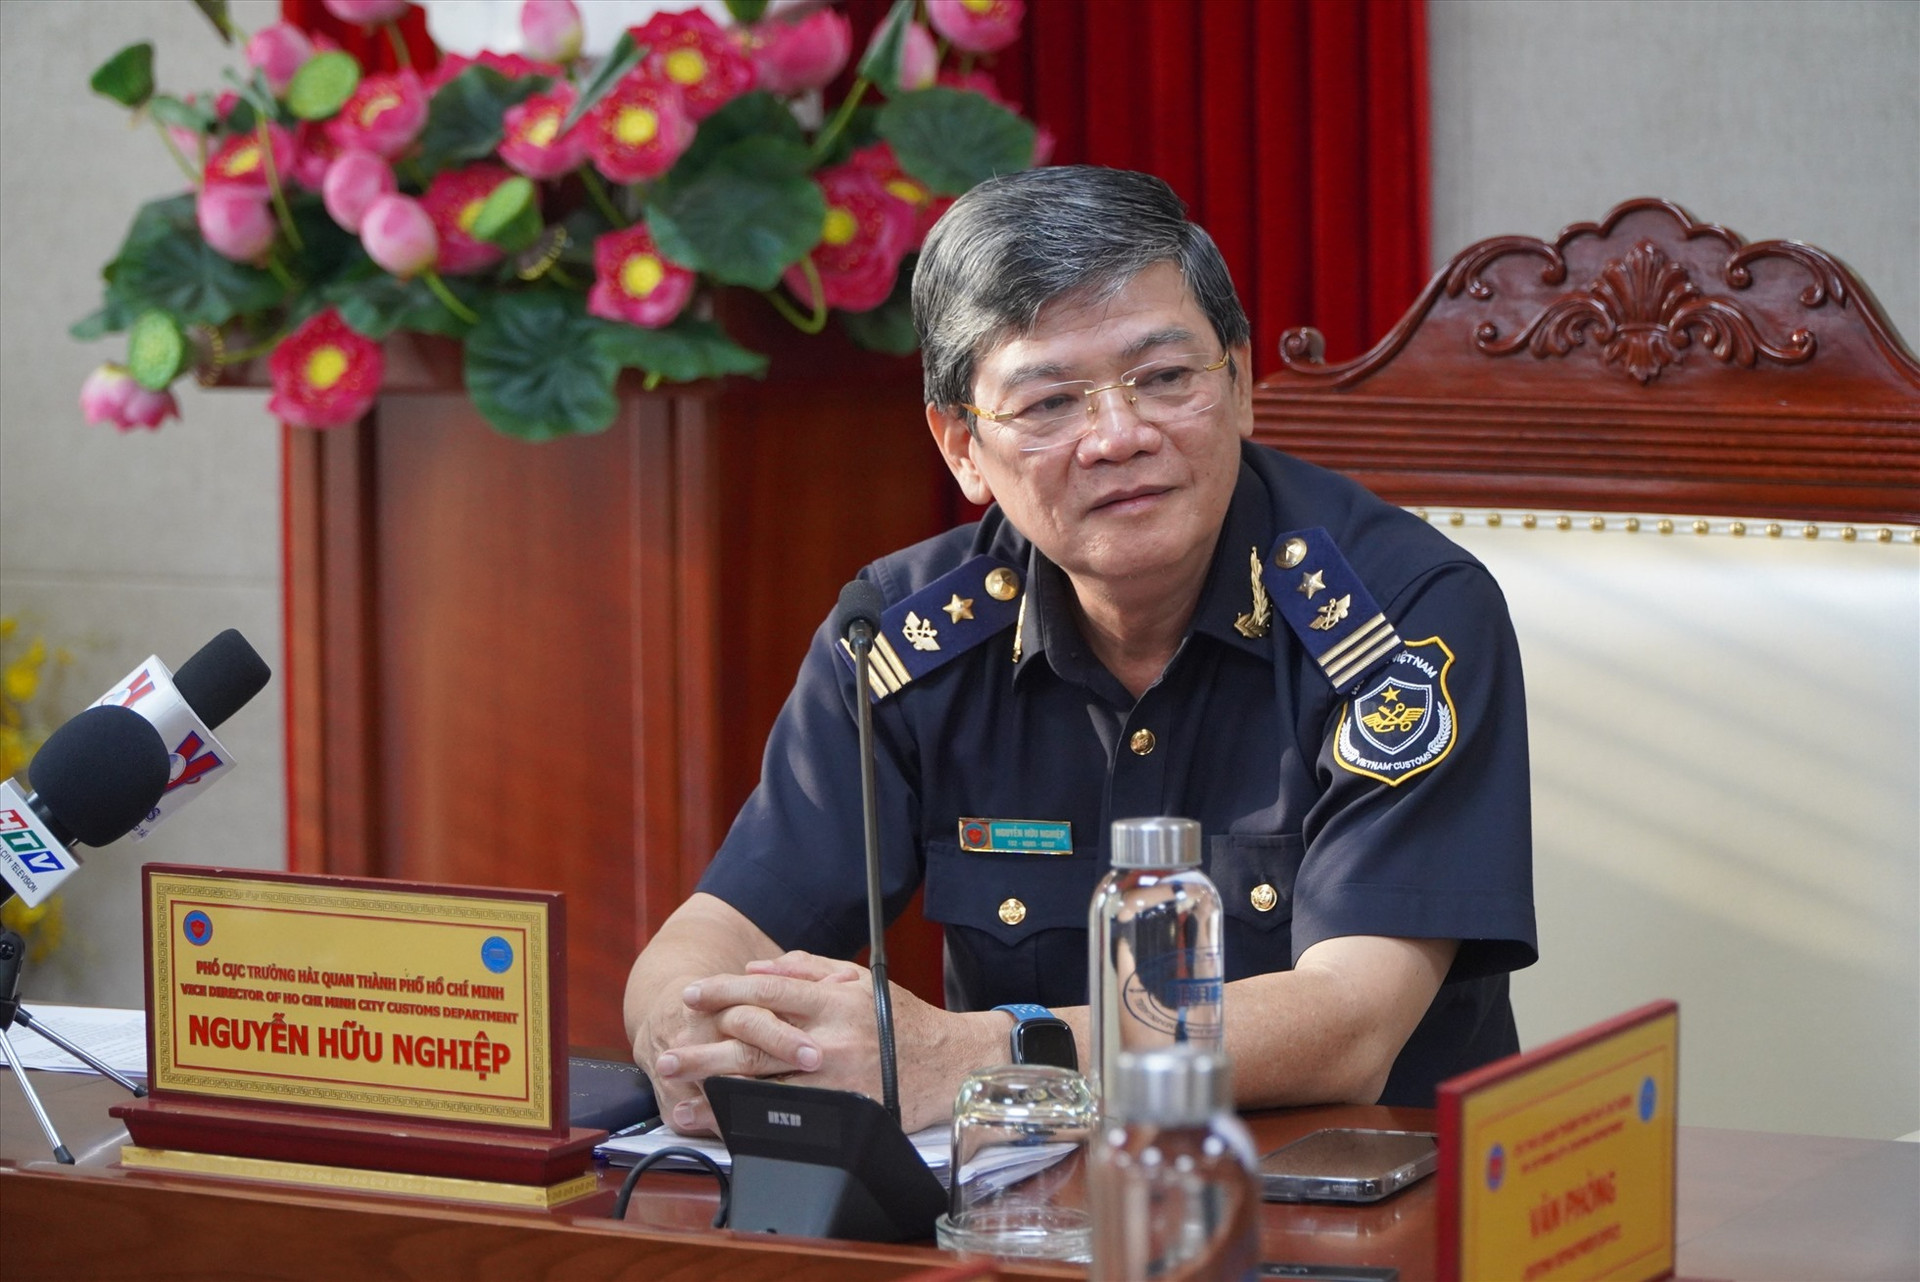 Ông Nguyễn Hữu Nghiệp cung cấp thông tin cho báo chí về việc 4 tiếp viên hàng không vận chuyển ma  túy về Việt Nam.